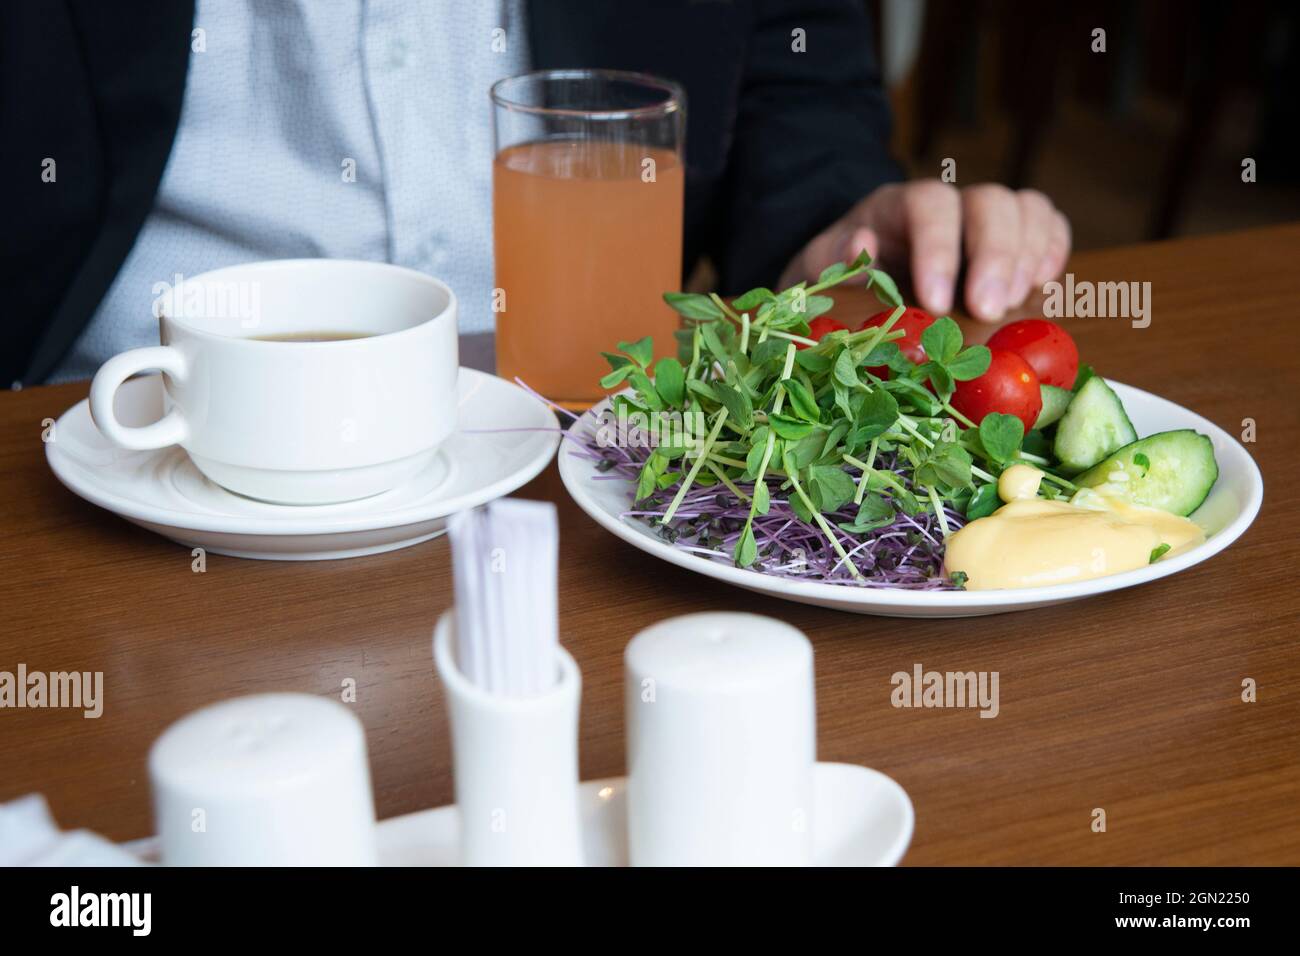 Nur ein Mann sitzt am Esstisch und serviert ein gesundes Frühstück mit Orangensaft und heißem Tee. Stockfoto